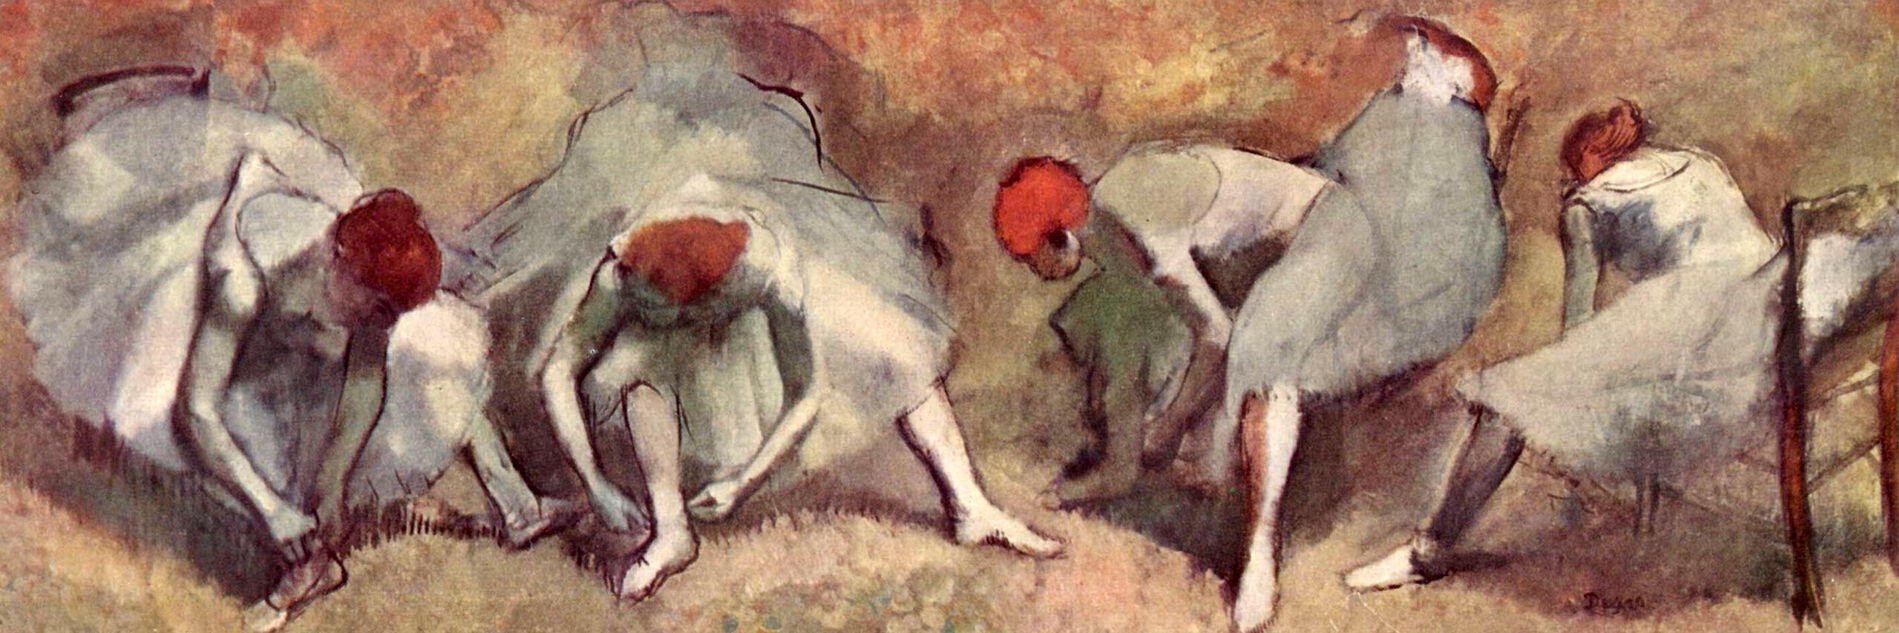 Edgar Degas - Tänzerinnen ihre Schuhe bindend, etwa 1893-1898